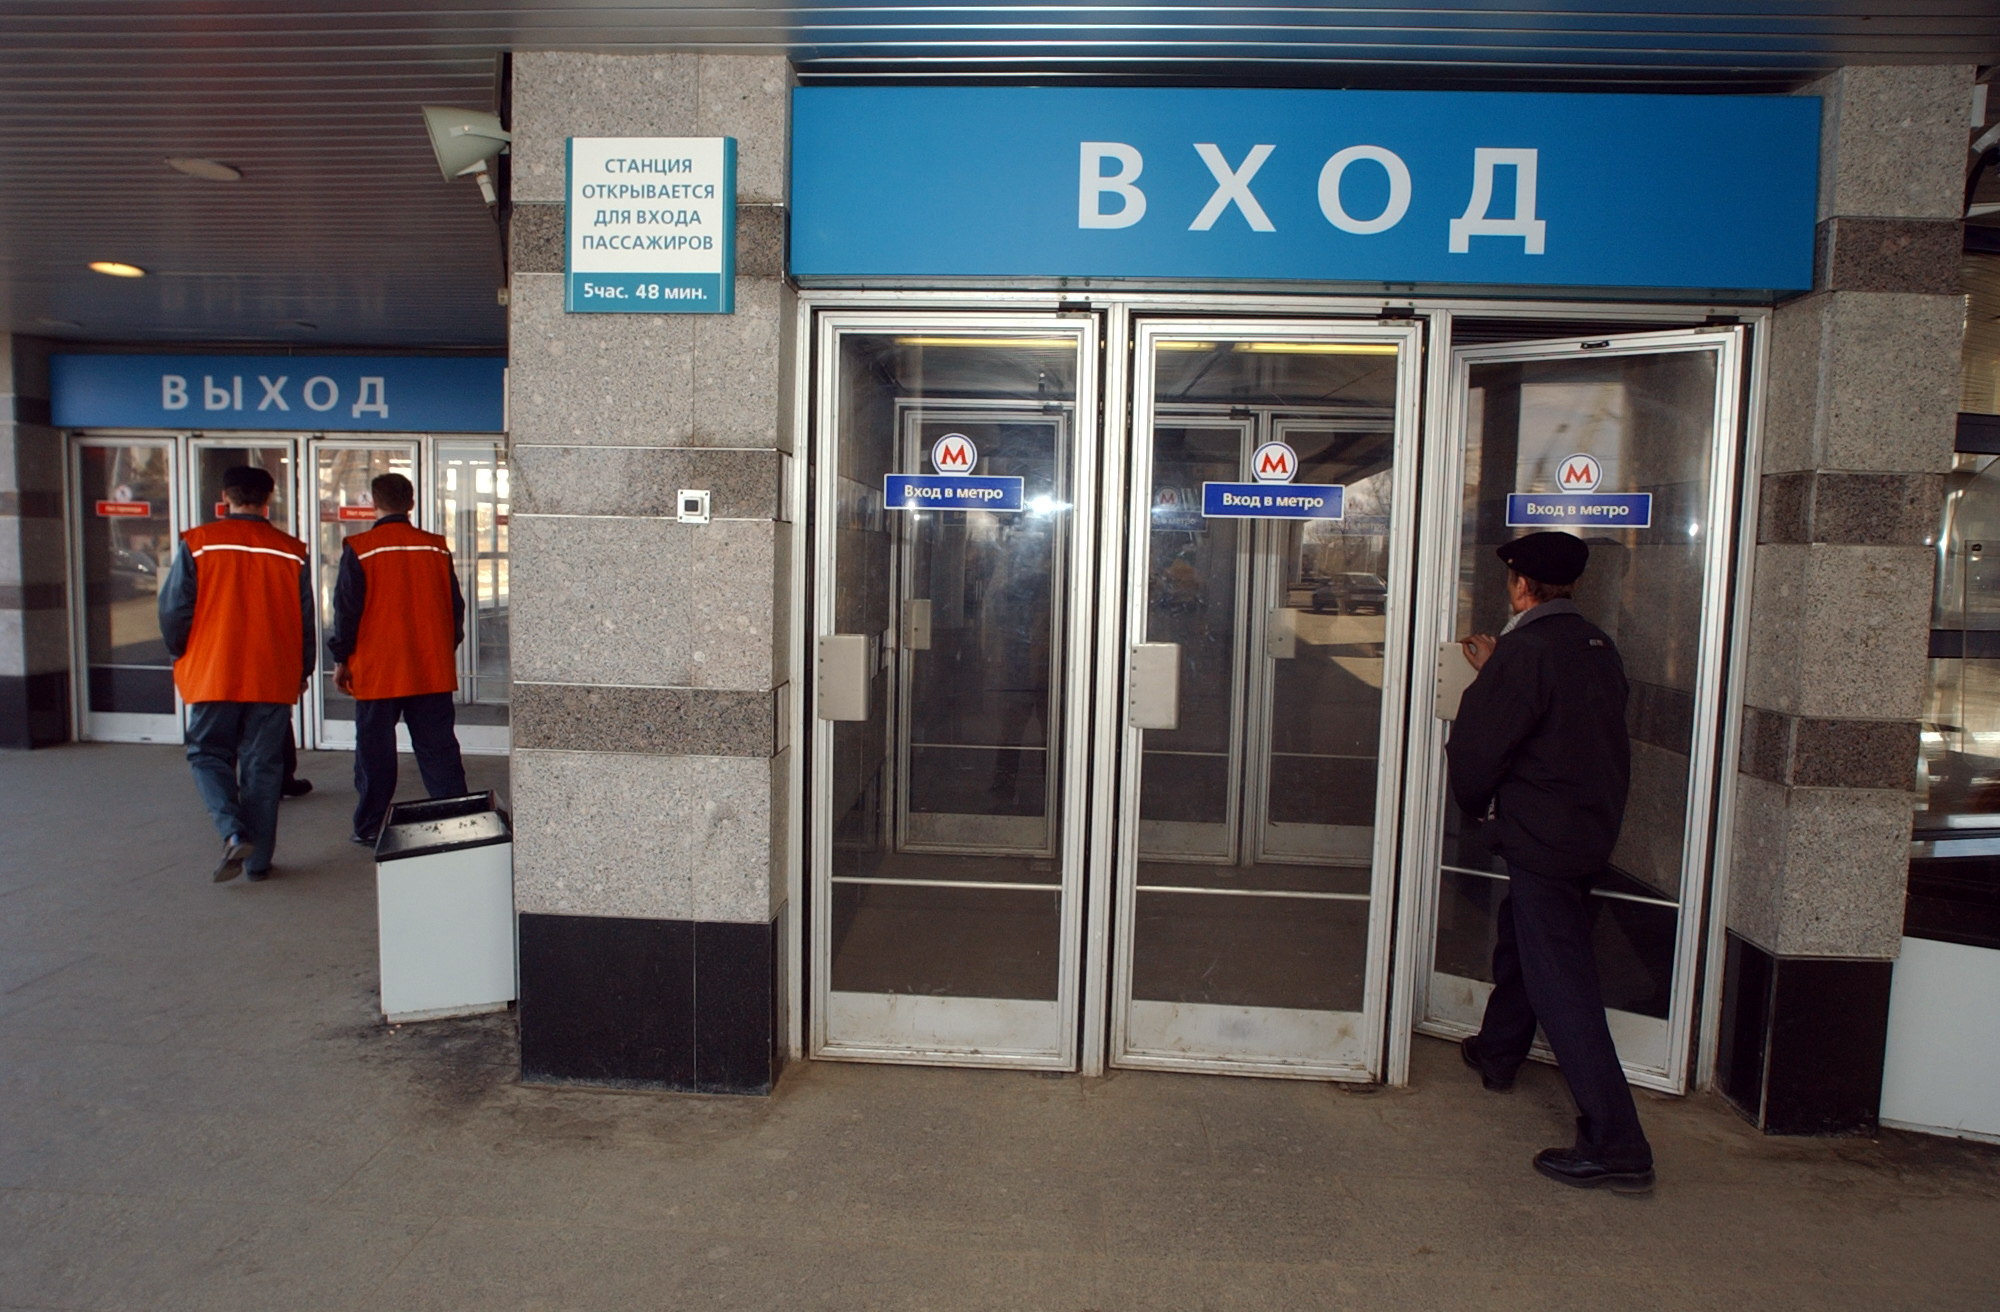 Вход в метро магазин. Двери метро. Метро дверь Москва. Вход в метро. Двери в вестибюле метро.